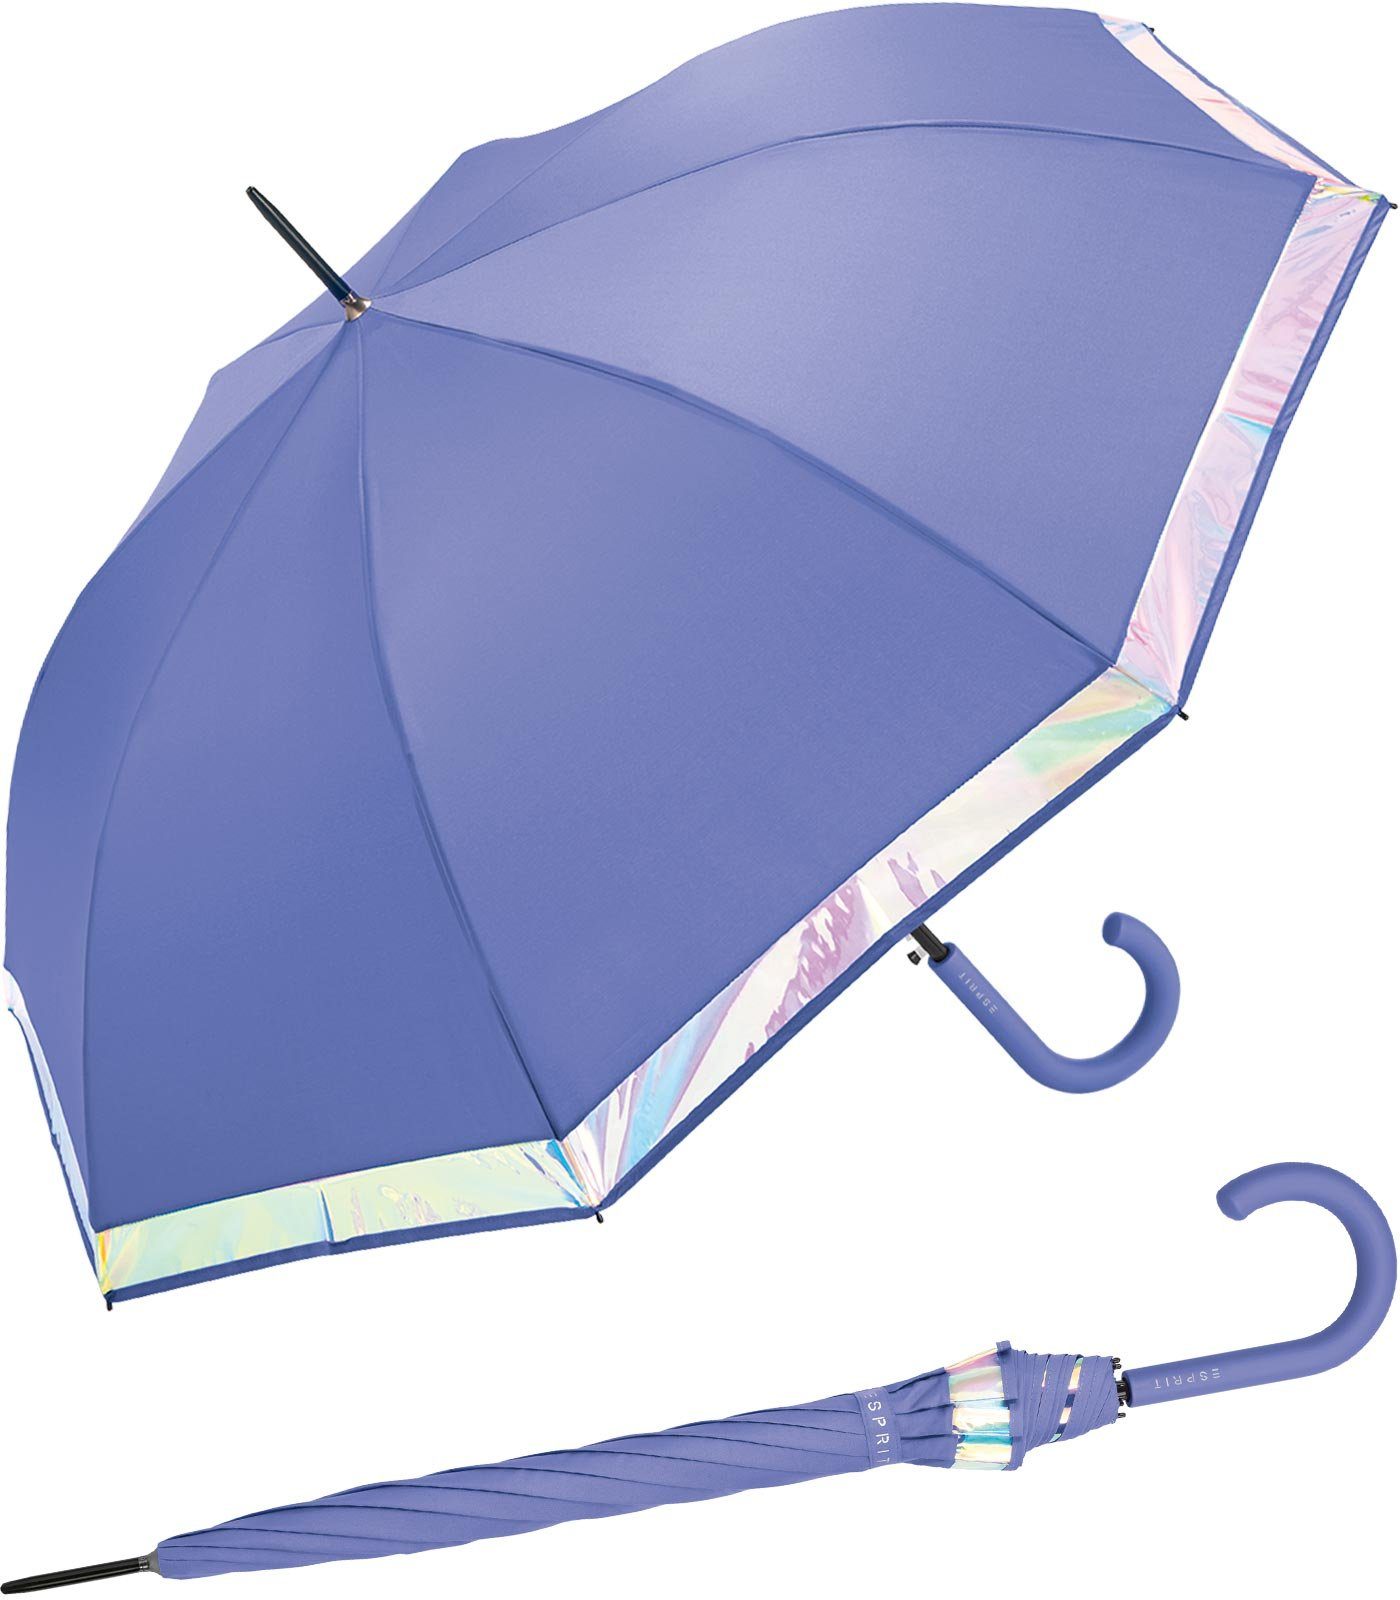 Esprit Langregenschirm Damen Regenschirm mit Automatik Shiny Border, groß und stabil, mit schimmernder Borte violett